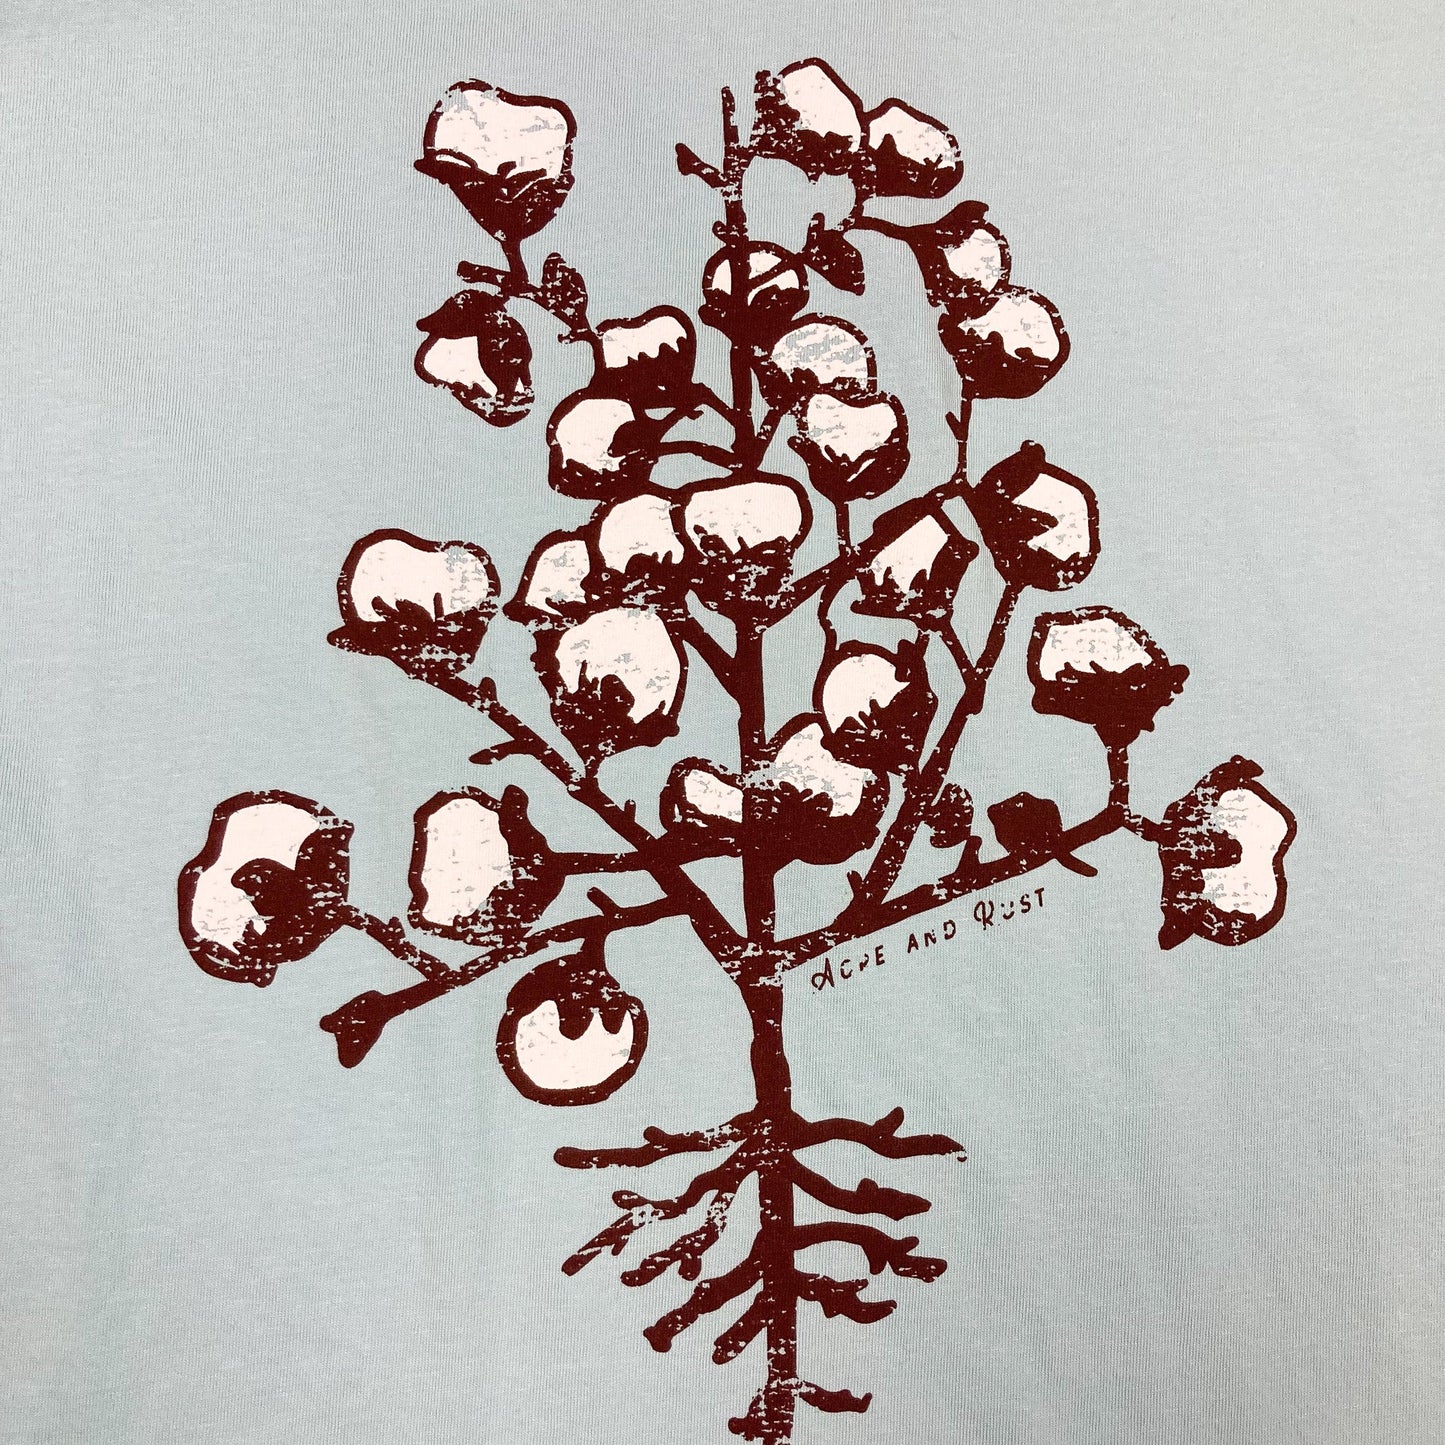 Acre + Rust Cotton Plant T-Shirt